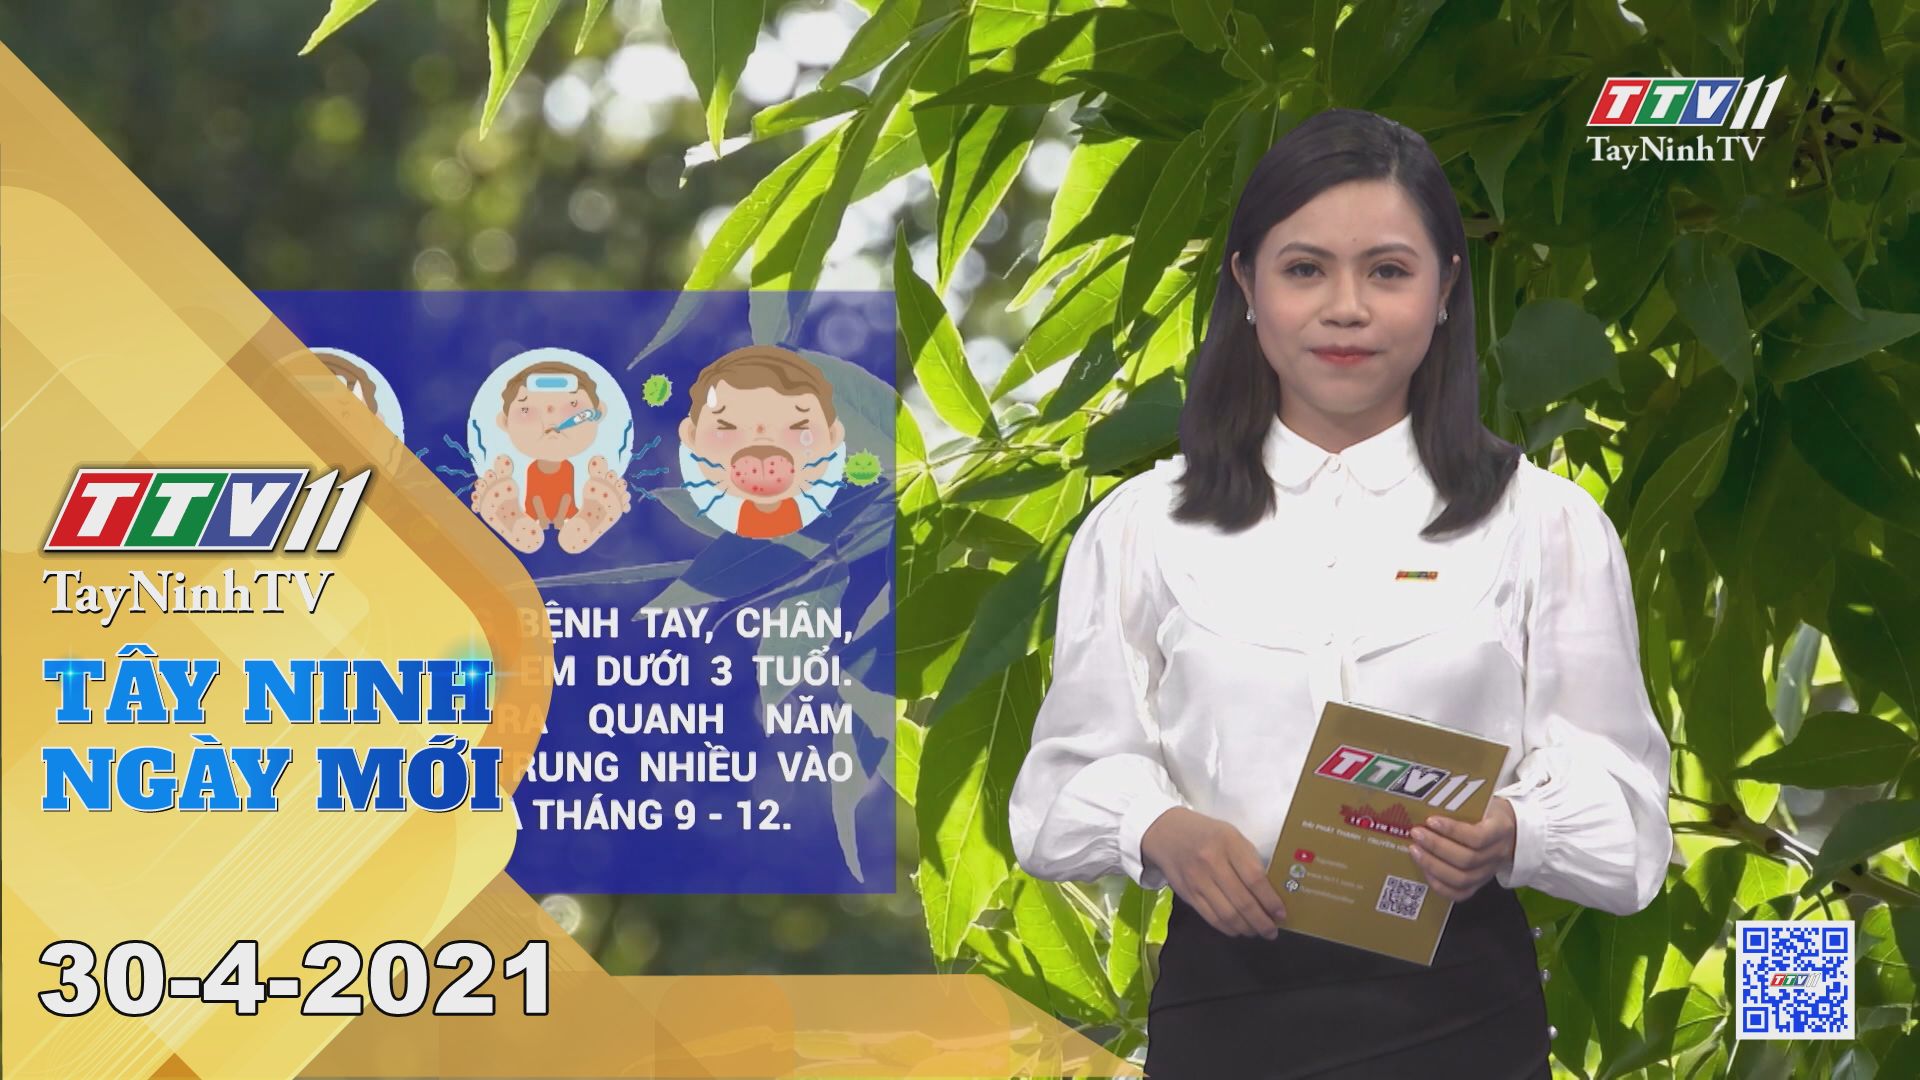 Tây Ninh Ngày Mới 30-4-2021 | Tin tức hôm nay | TayNinhTV